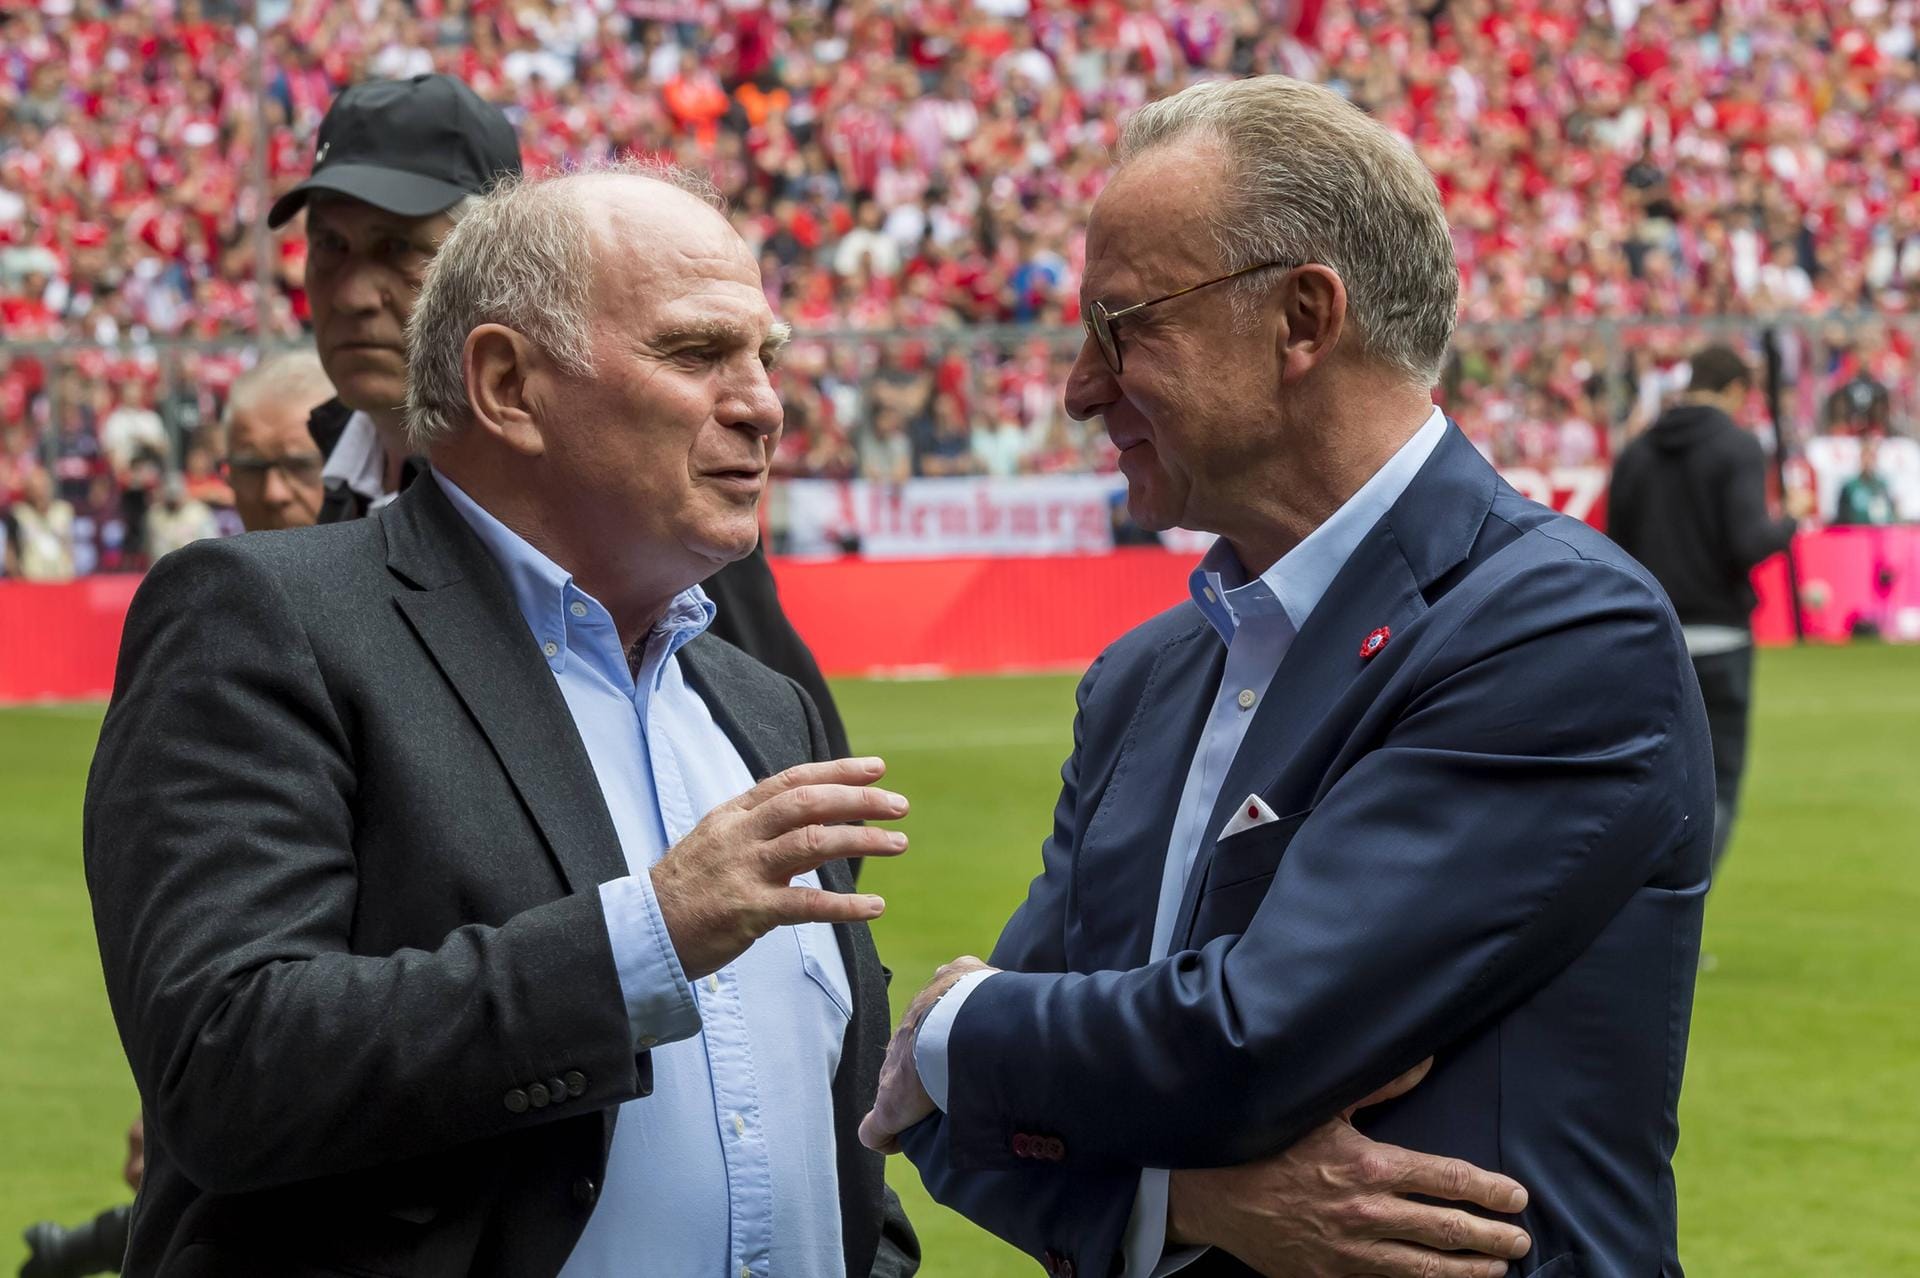 Bayern-Präsident Uli Hoeneß (l.) zur Frage, ob Niko Kovac Trainer bleibt: "Ich habe mich an dieser Diskussion nie beteiligt und werde mich am Tag des Triumphs nicht beteiligen. Wir sollten das Thema langsam aus unseren Köpfen bringen."